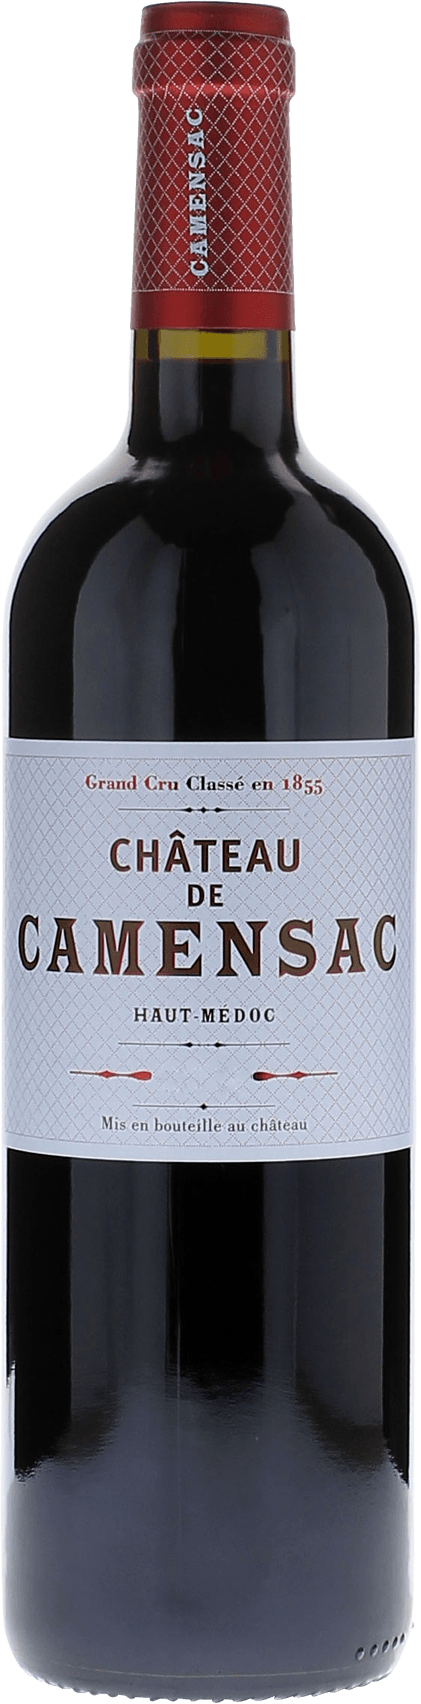 Camensac 1995 5me Grand cru class Mdoc, Bordeaux rouge